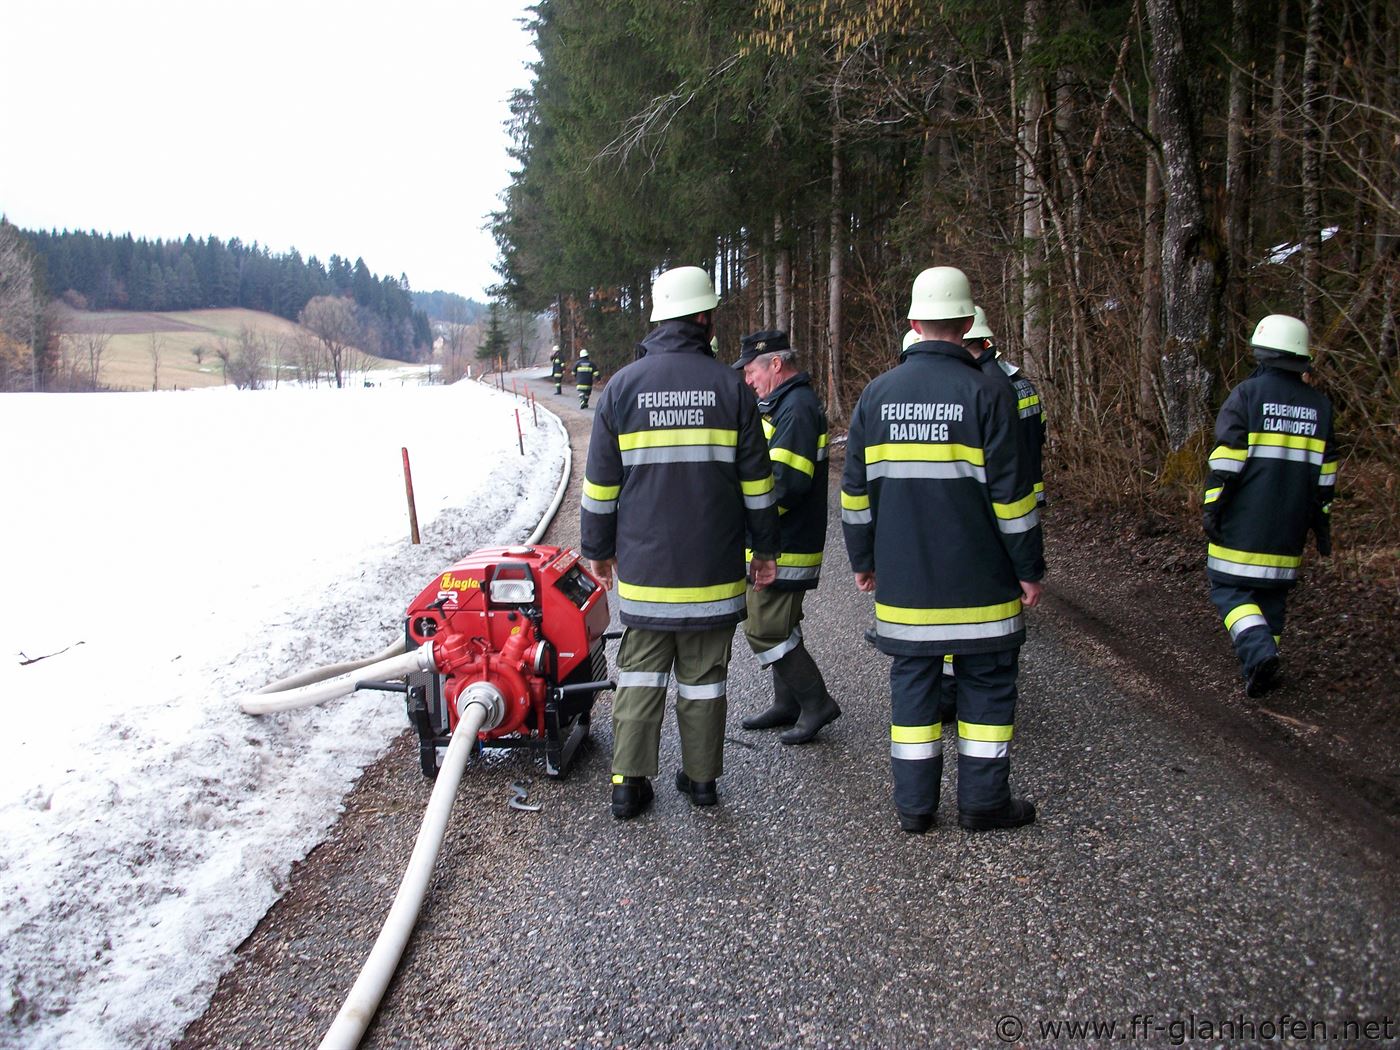 Freiwillige Feuerwehr Glanhofen